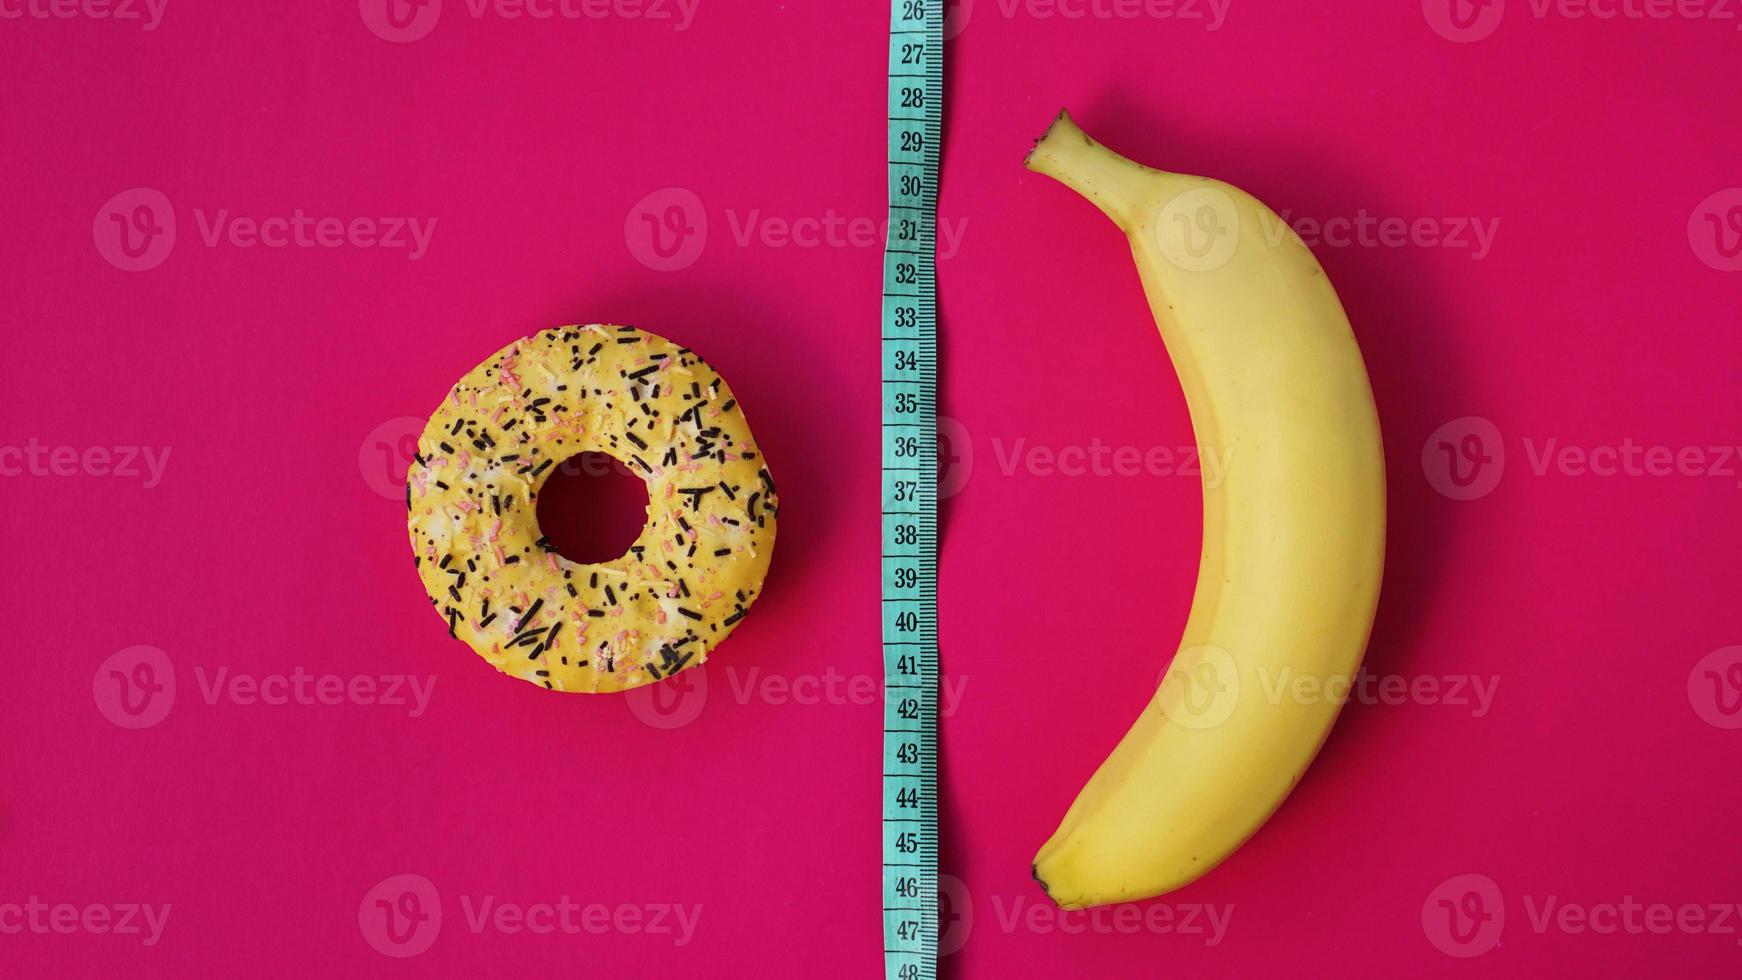 två typer av mat, hälsosam och ohälsosam, banan foto